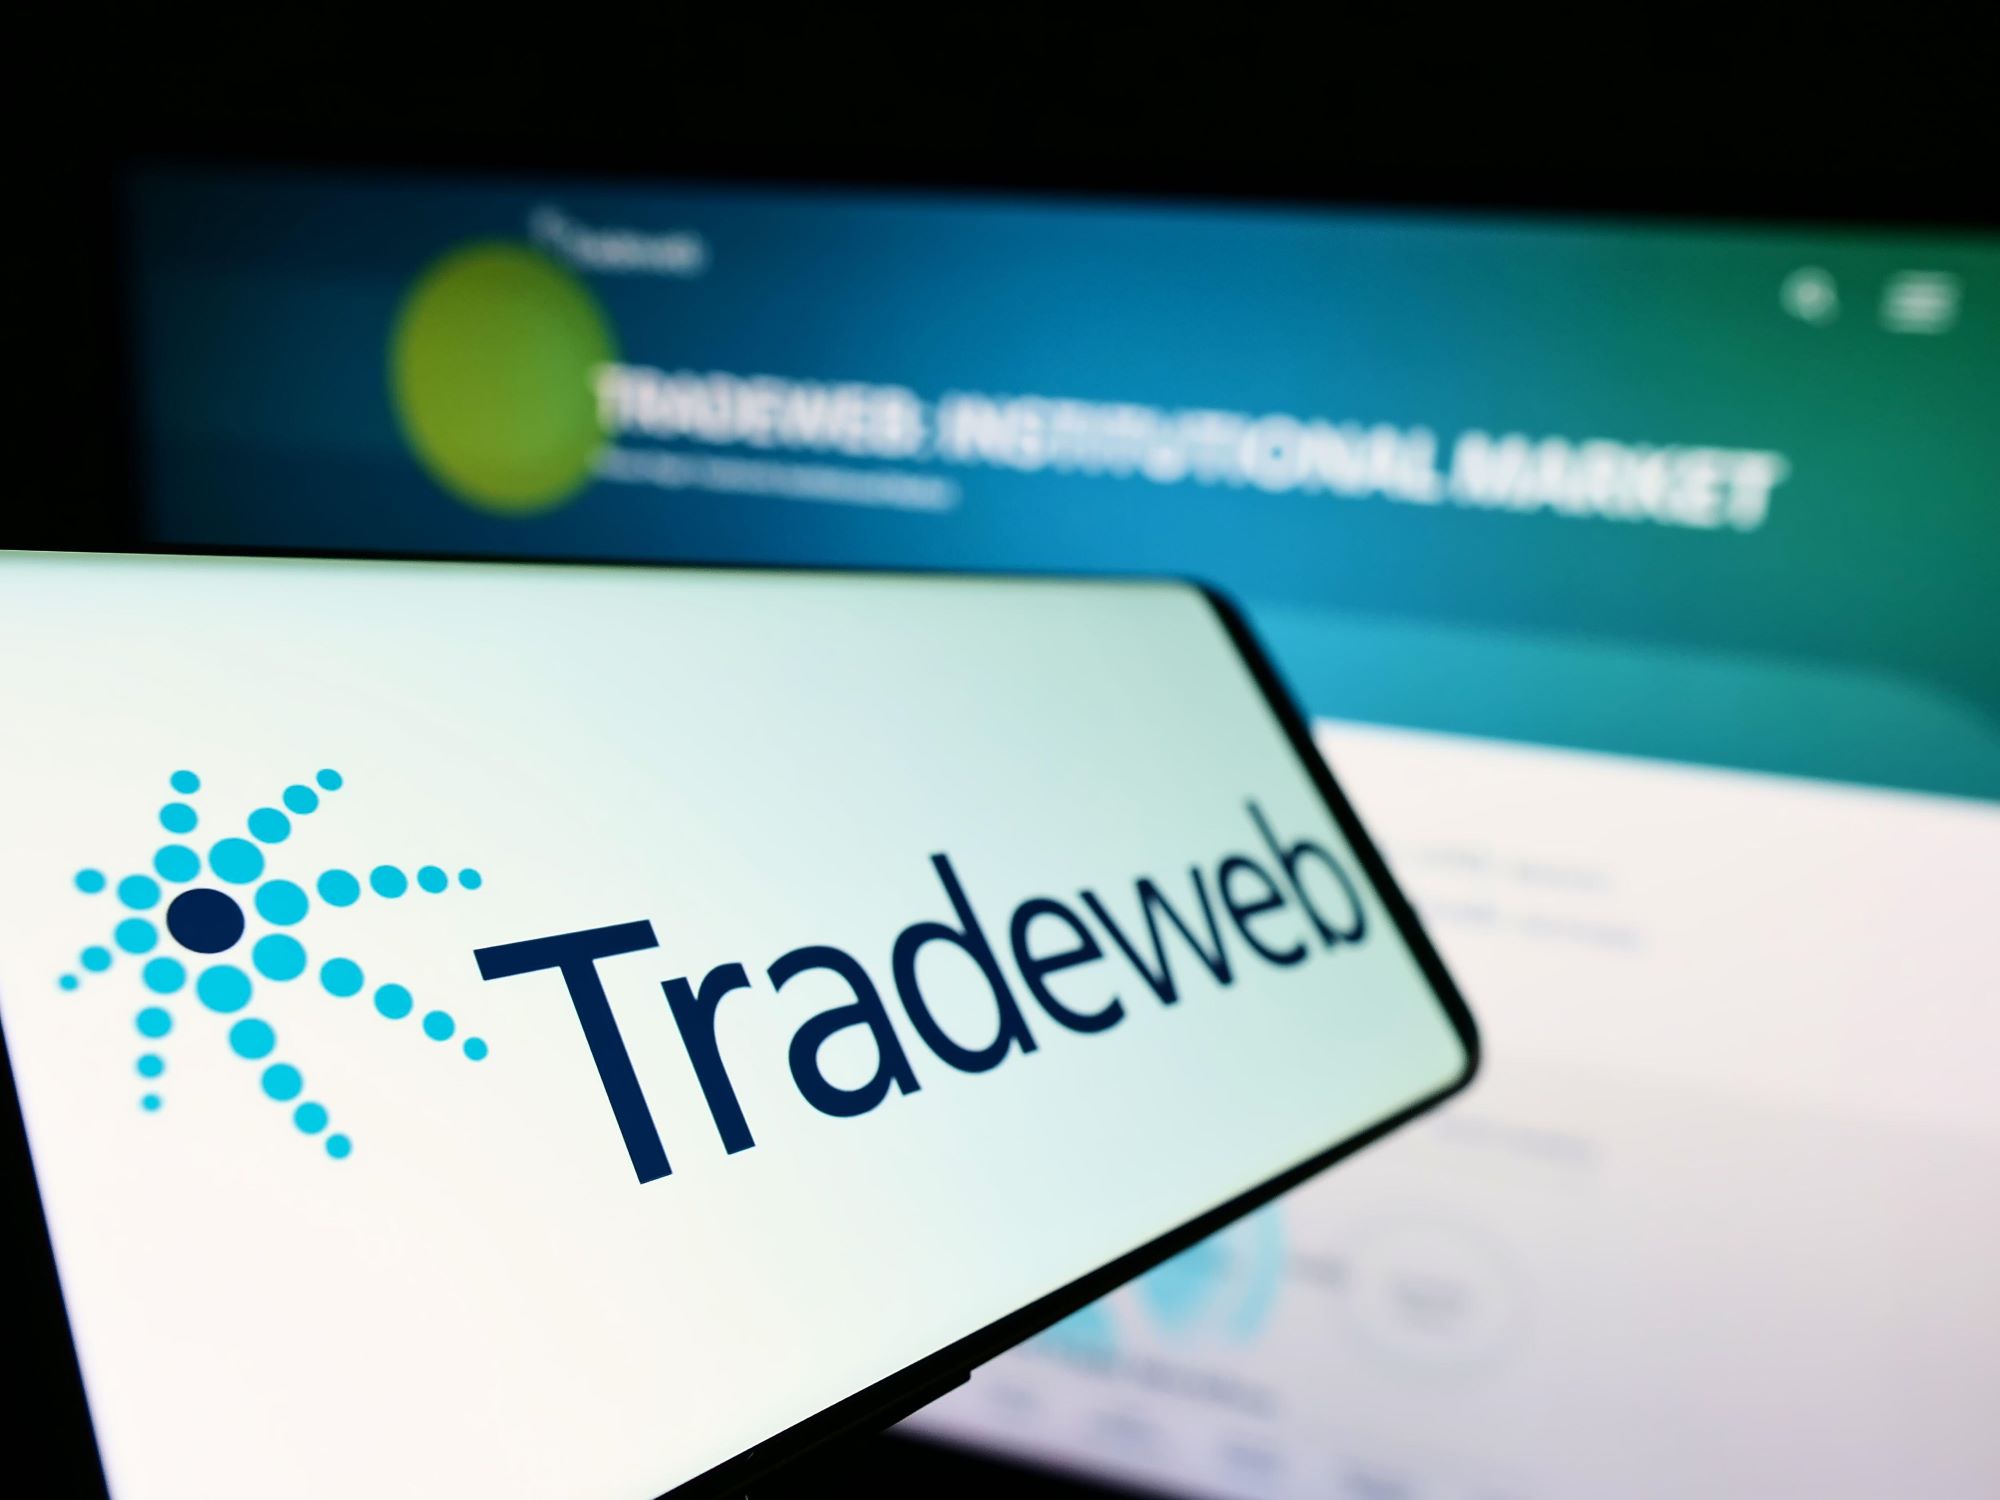 ارتفاع إيرادات Tradeweb بنسبة 5.7% مع وصول ADV إلى 1.4$ تريليون خلال الربع الأول